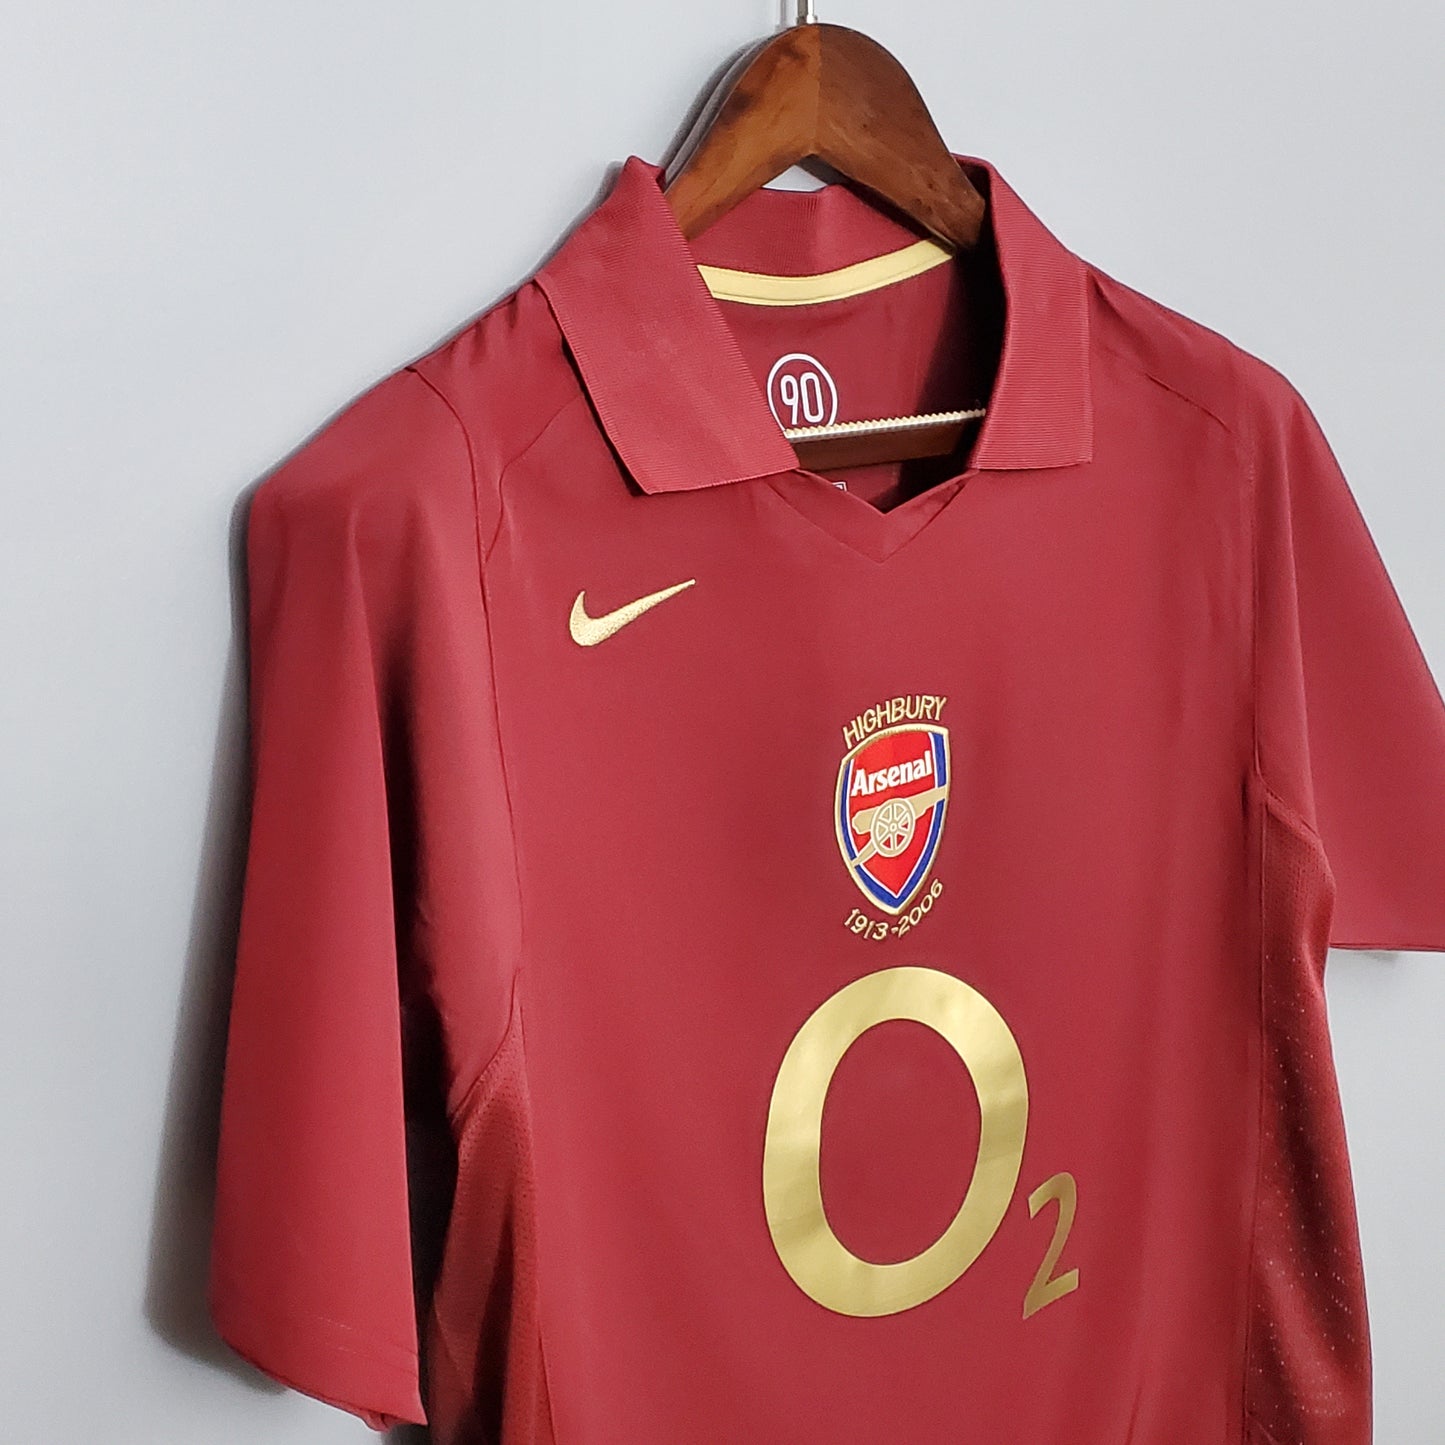 Arsenal 05-06 Home Shirt